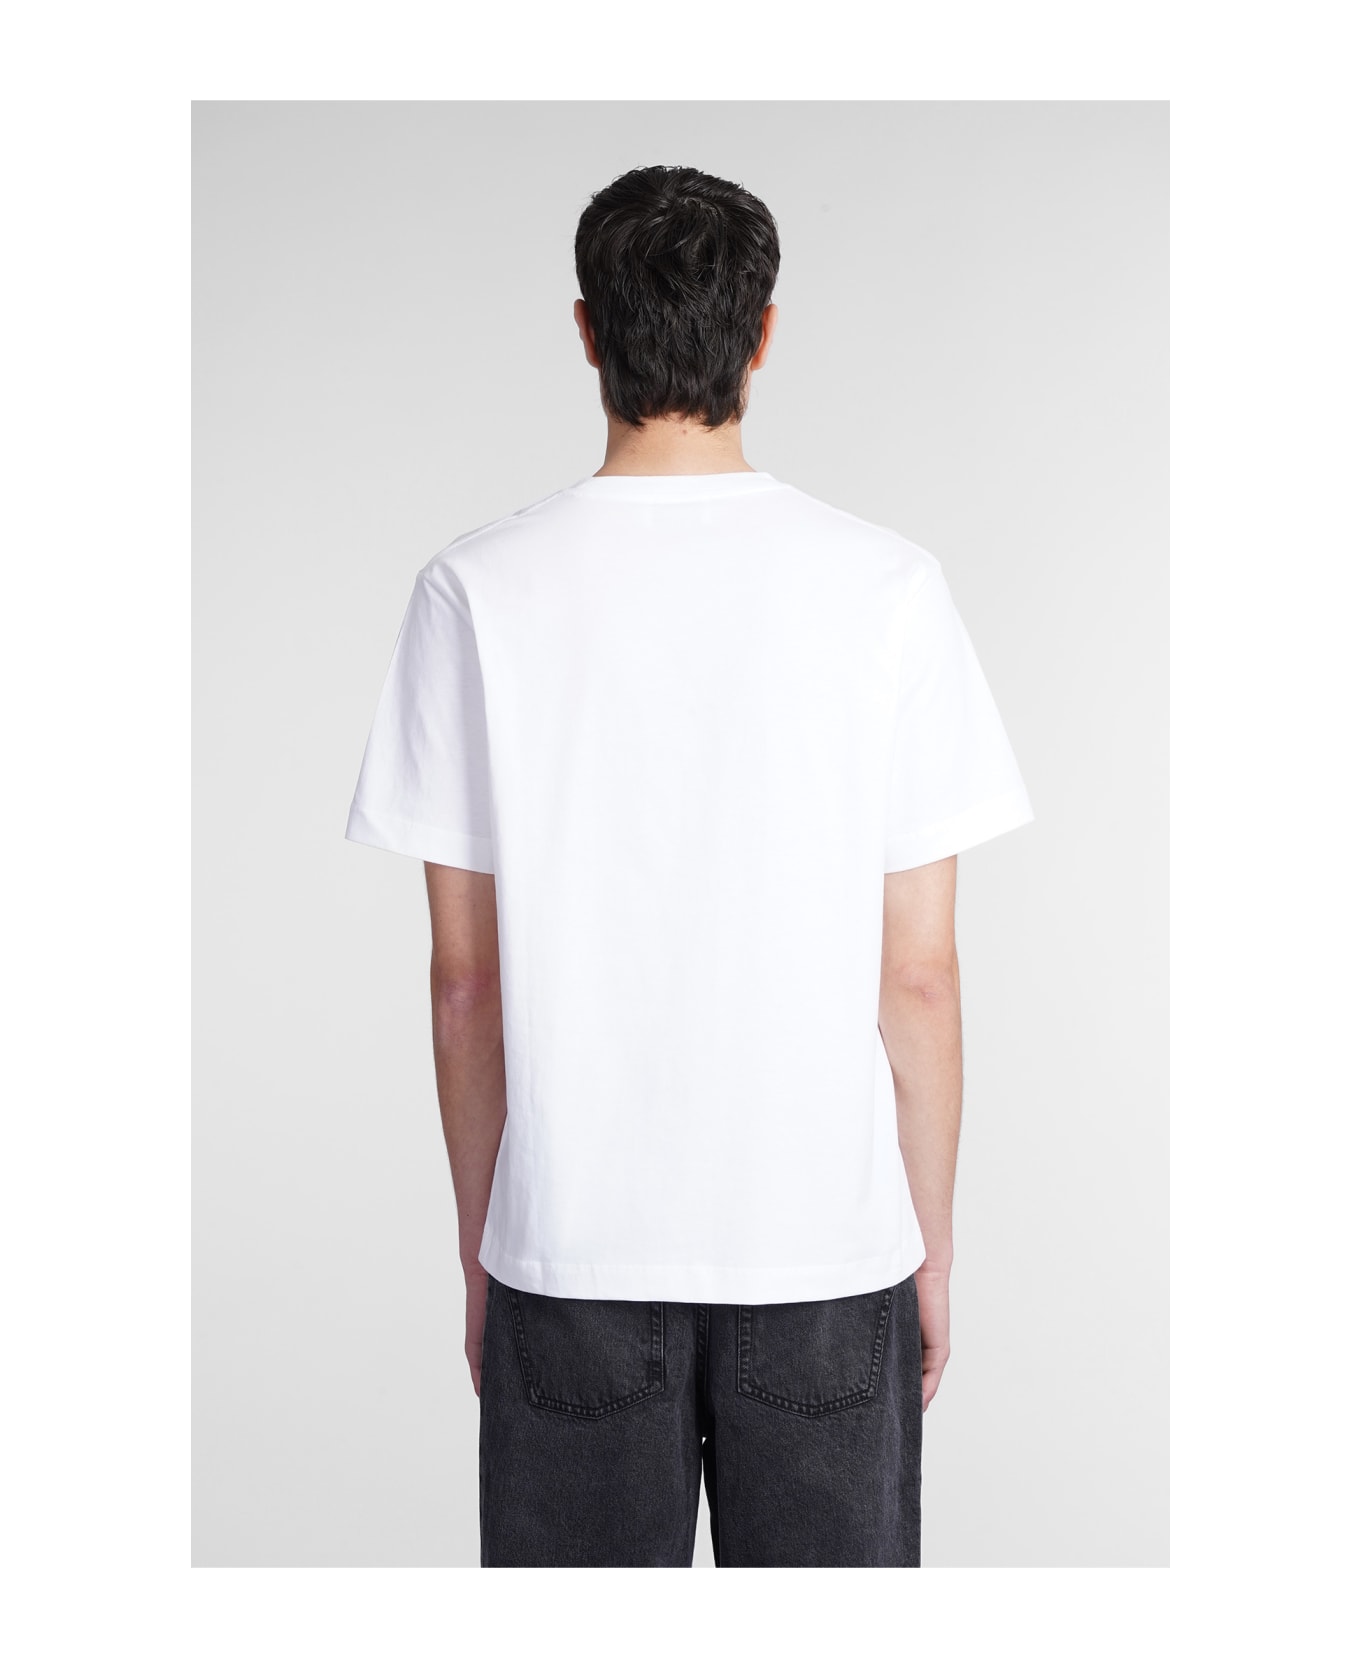 Études T-shirt In White Cotton - White